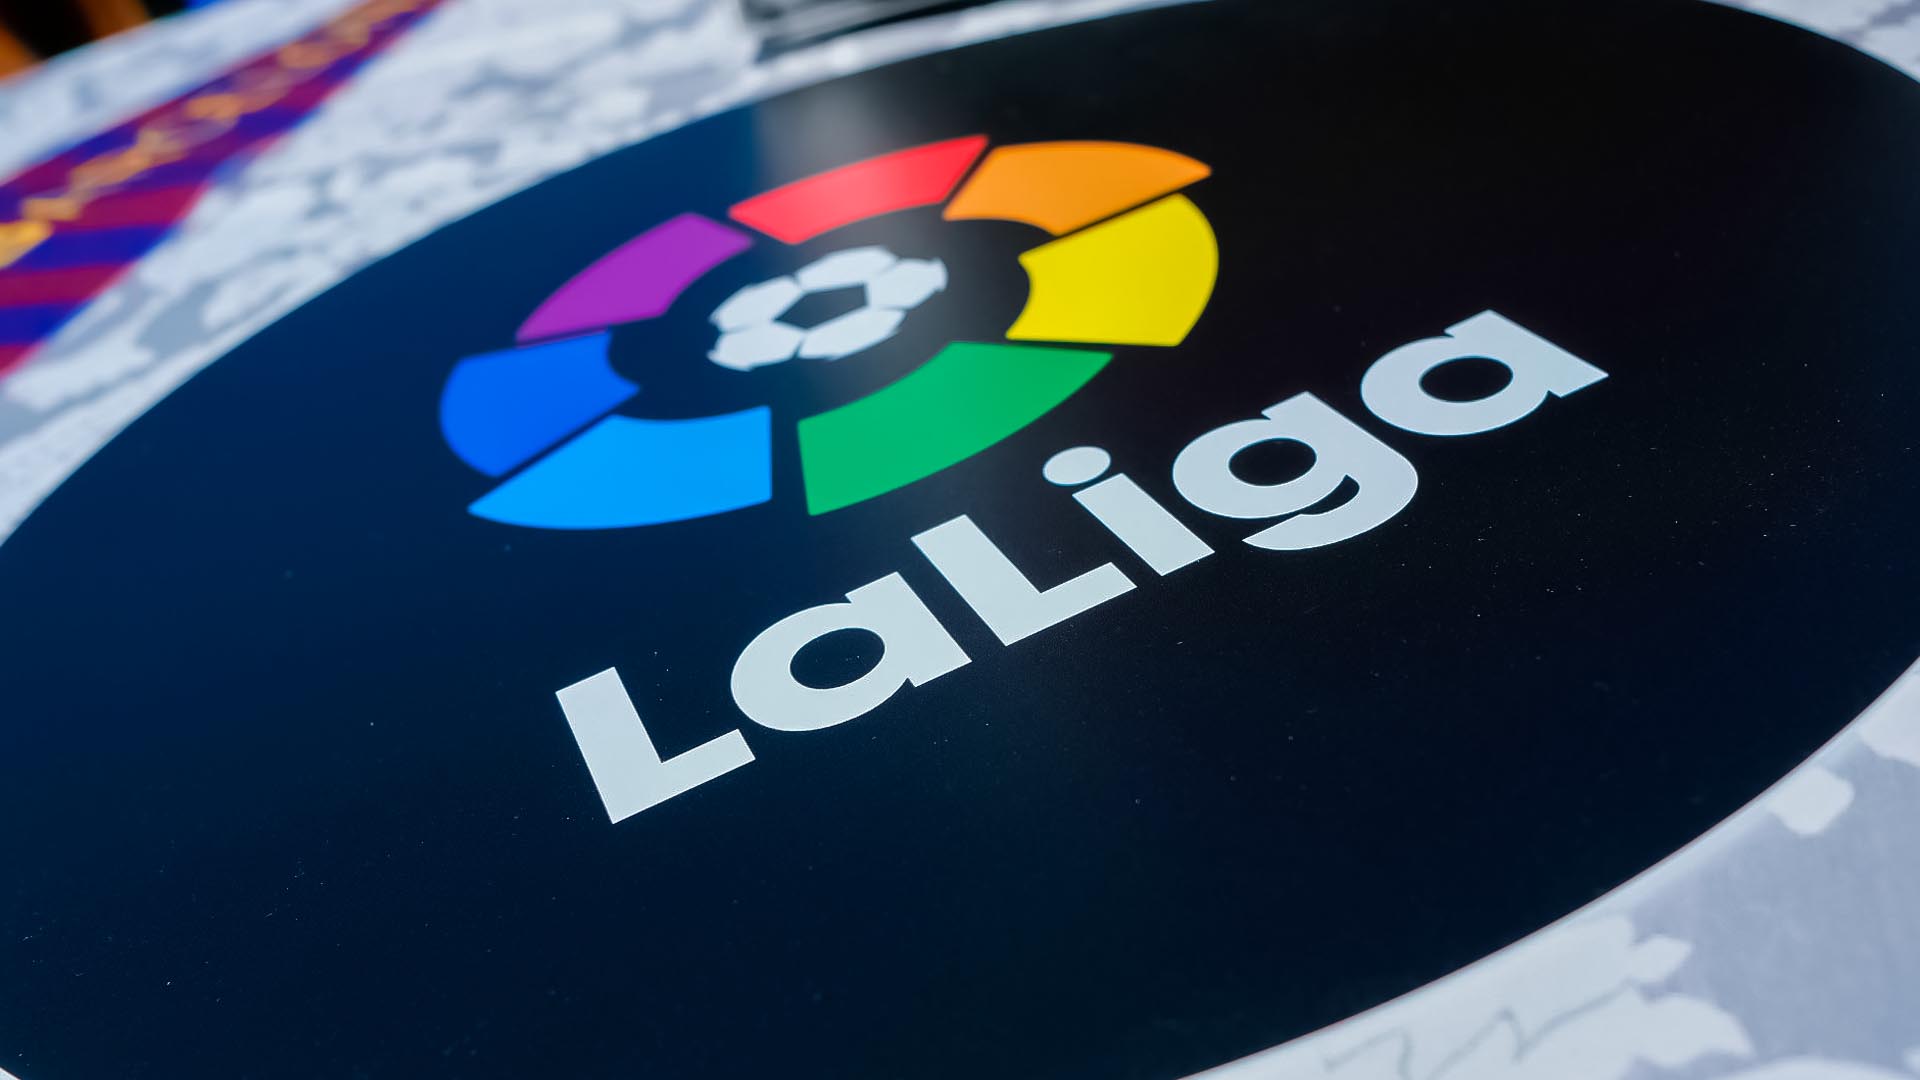 LaLiga spending cap raised by 800 million Euros for Barcelona